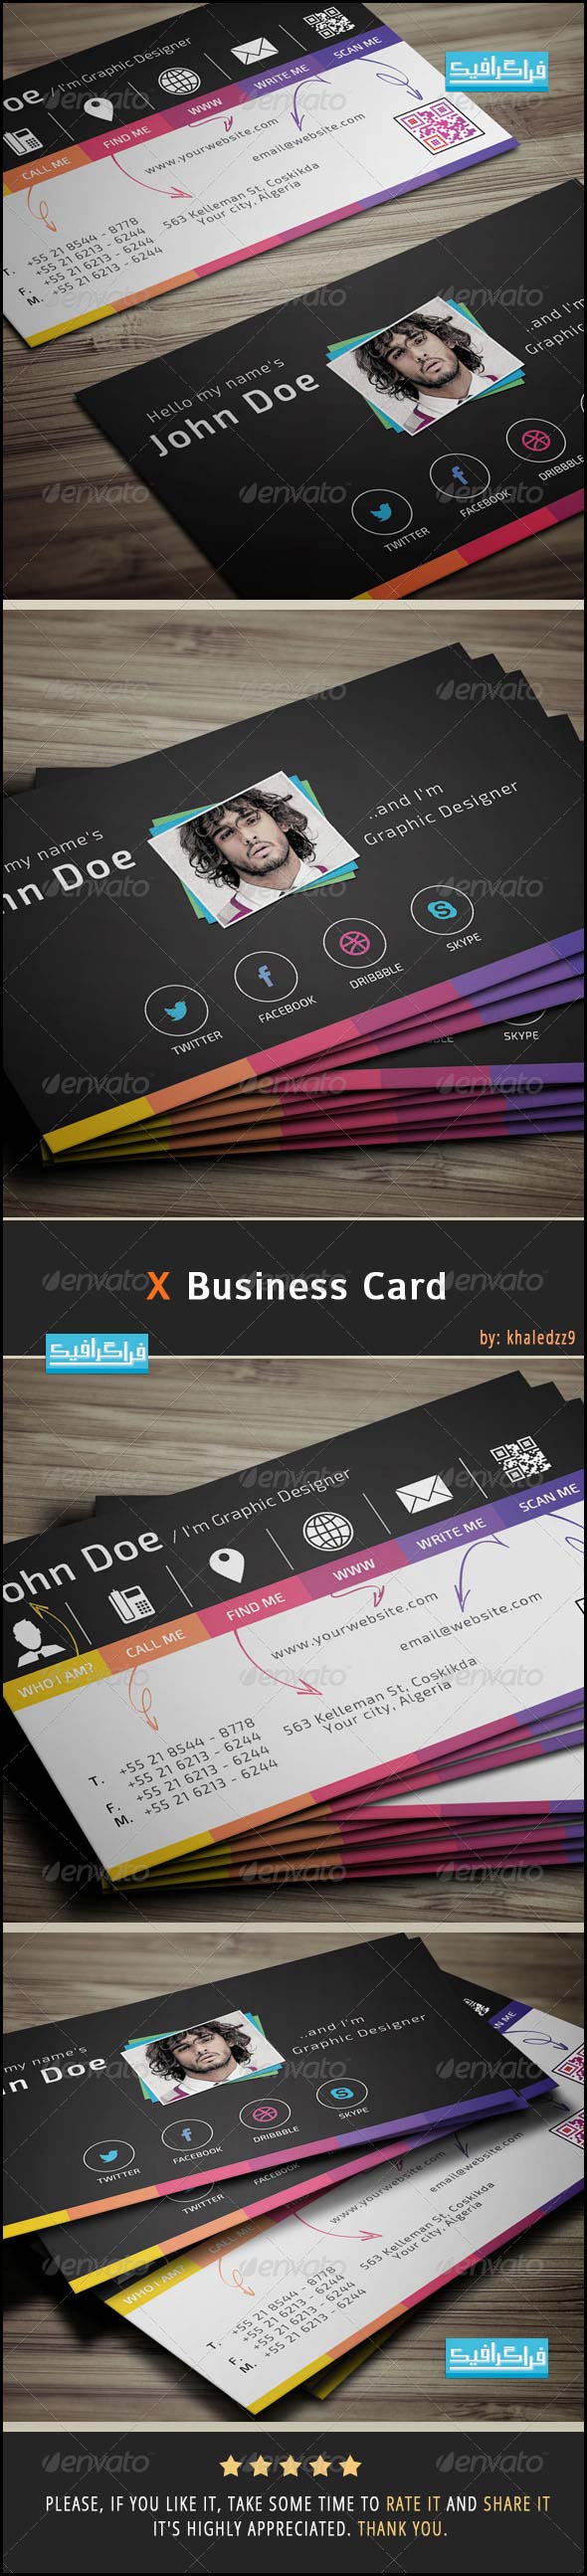 دانلود کارت ویزیت X Business Card